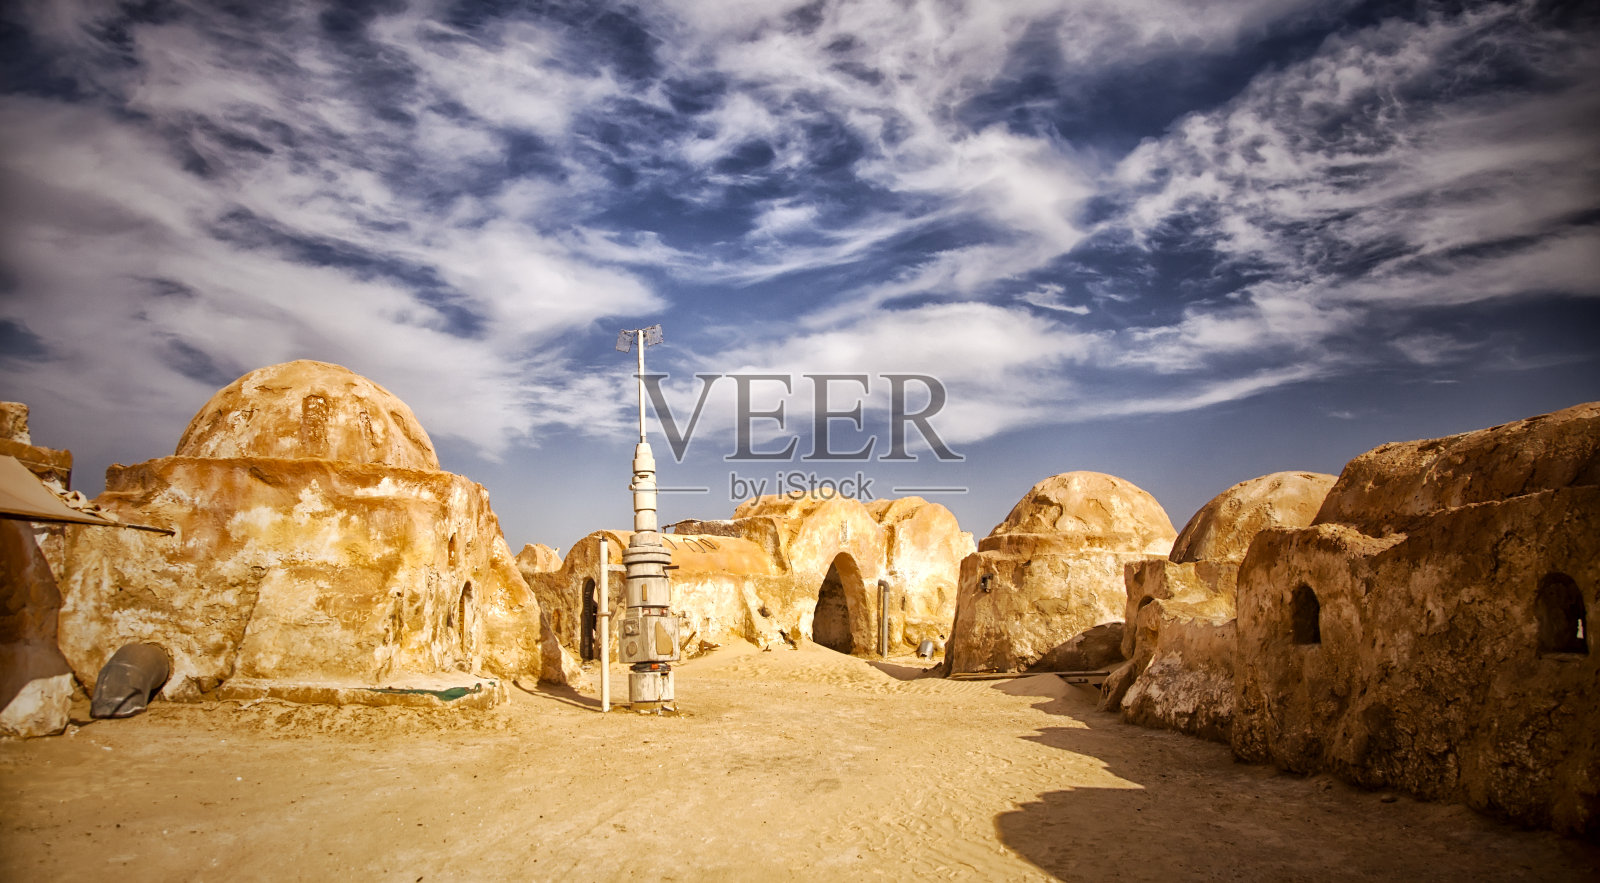 《星球大战》电影取材于突尼斯的撒哈拉沙漠照片摄影图片